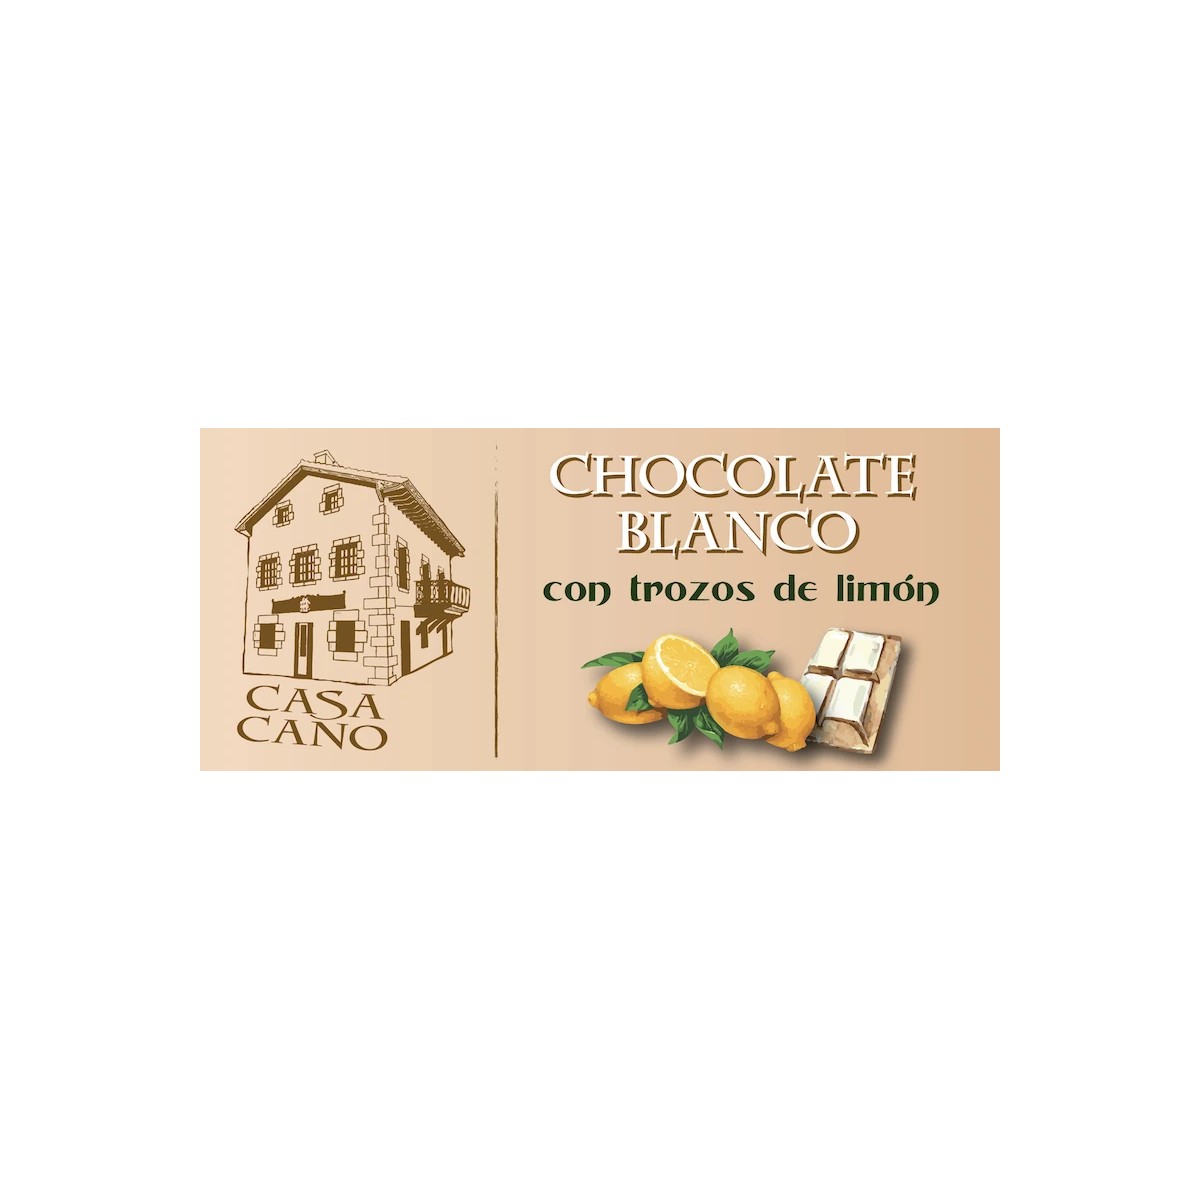 Comprar chocolate blanco con trozos de limon casa cano